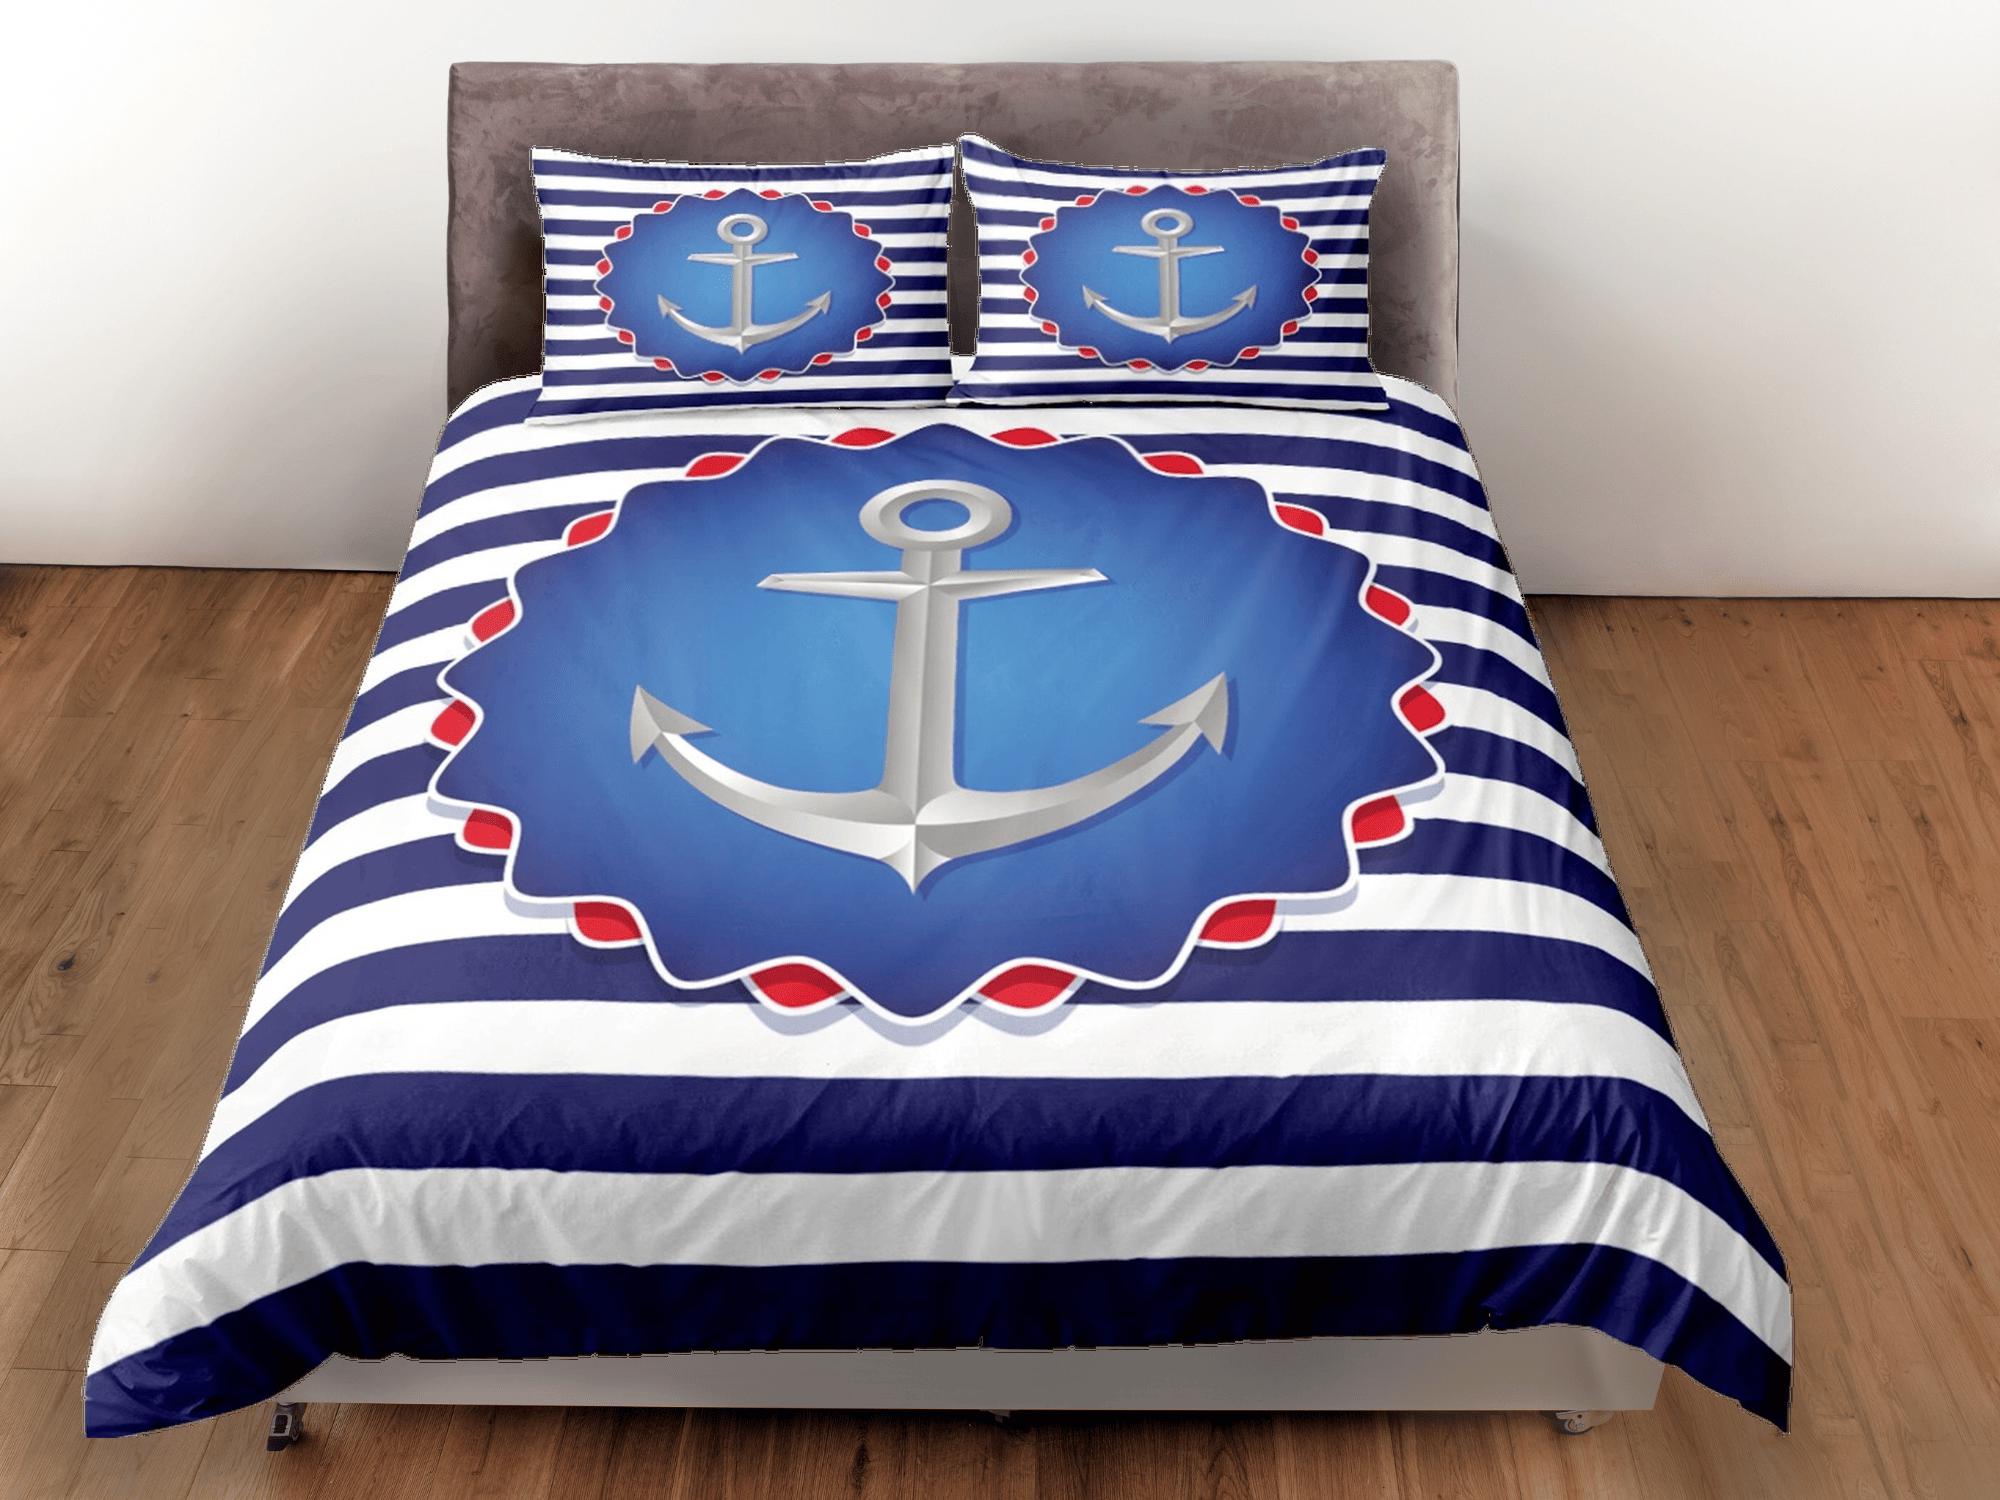 daintyduvet Blue white stripe anchor decor duvet cover coastal grandma nautical bedding set full queen king, aesthetic room decor, seaman gift